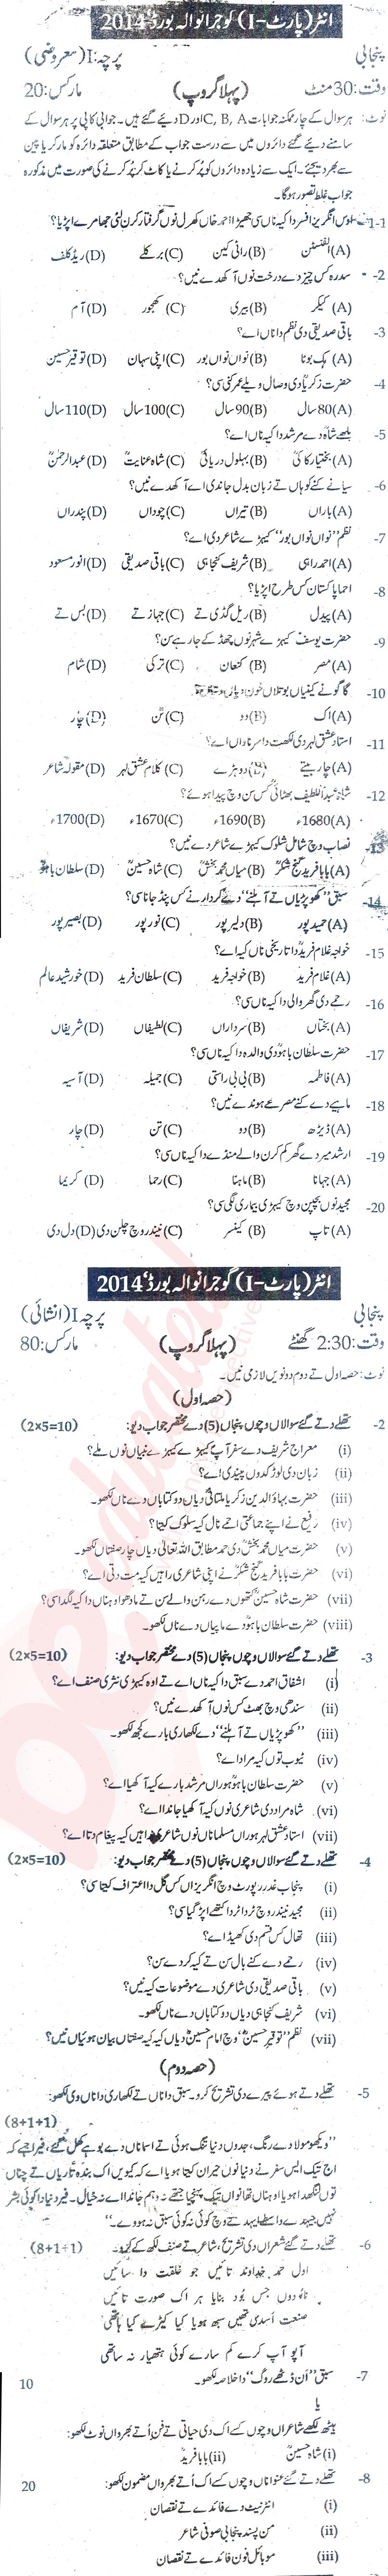 Punjabi FA Part 1 Past Paper Group 1 BISE Gujranwala 2014